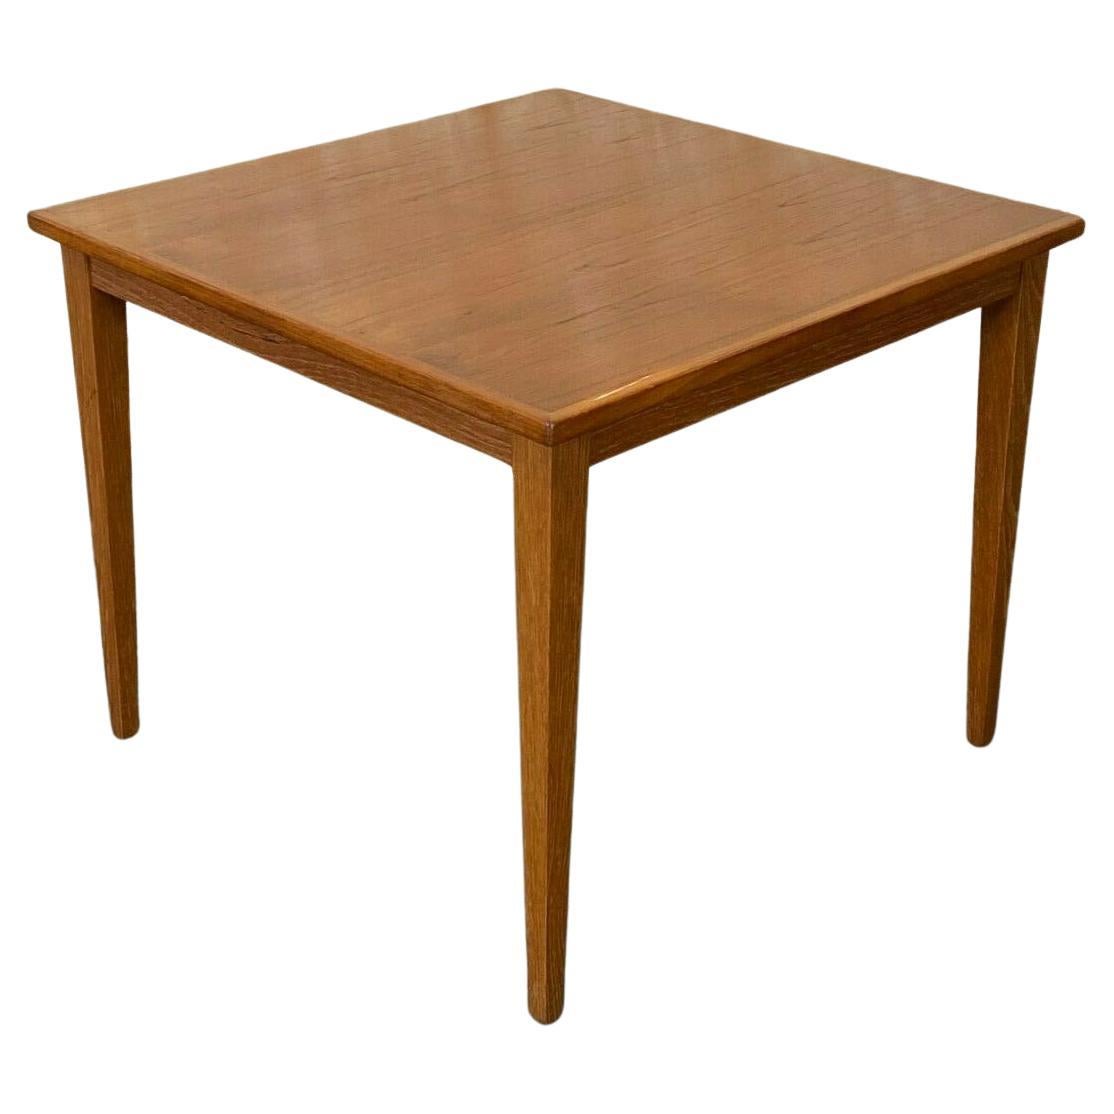 60s 70s Teak Table Coffee Table Side Table Kvaletit Danish Modern Design